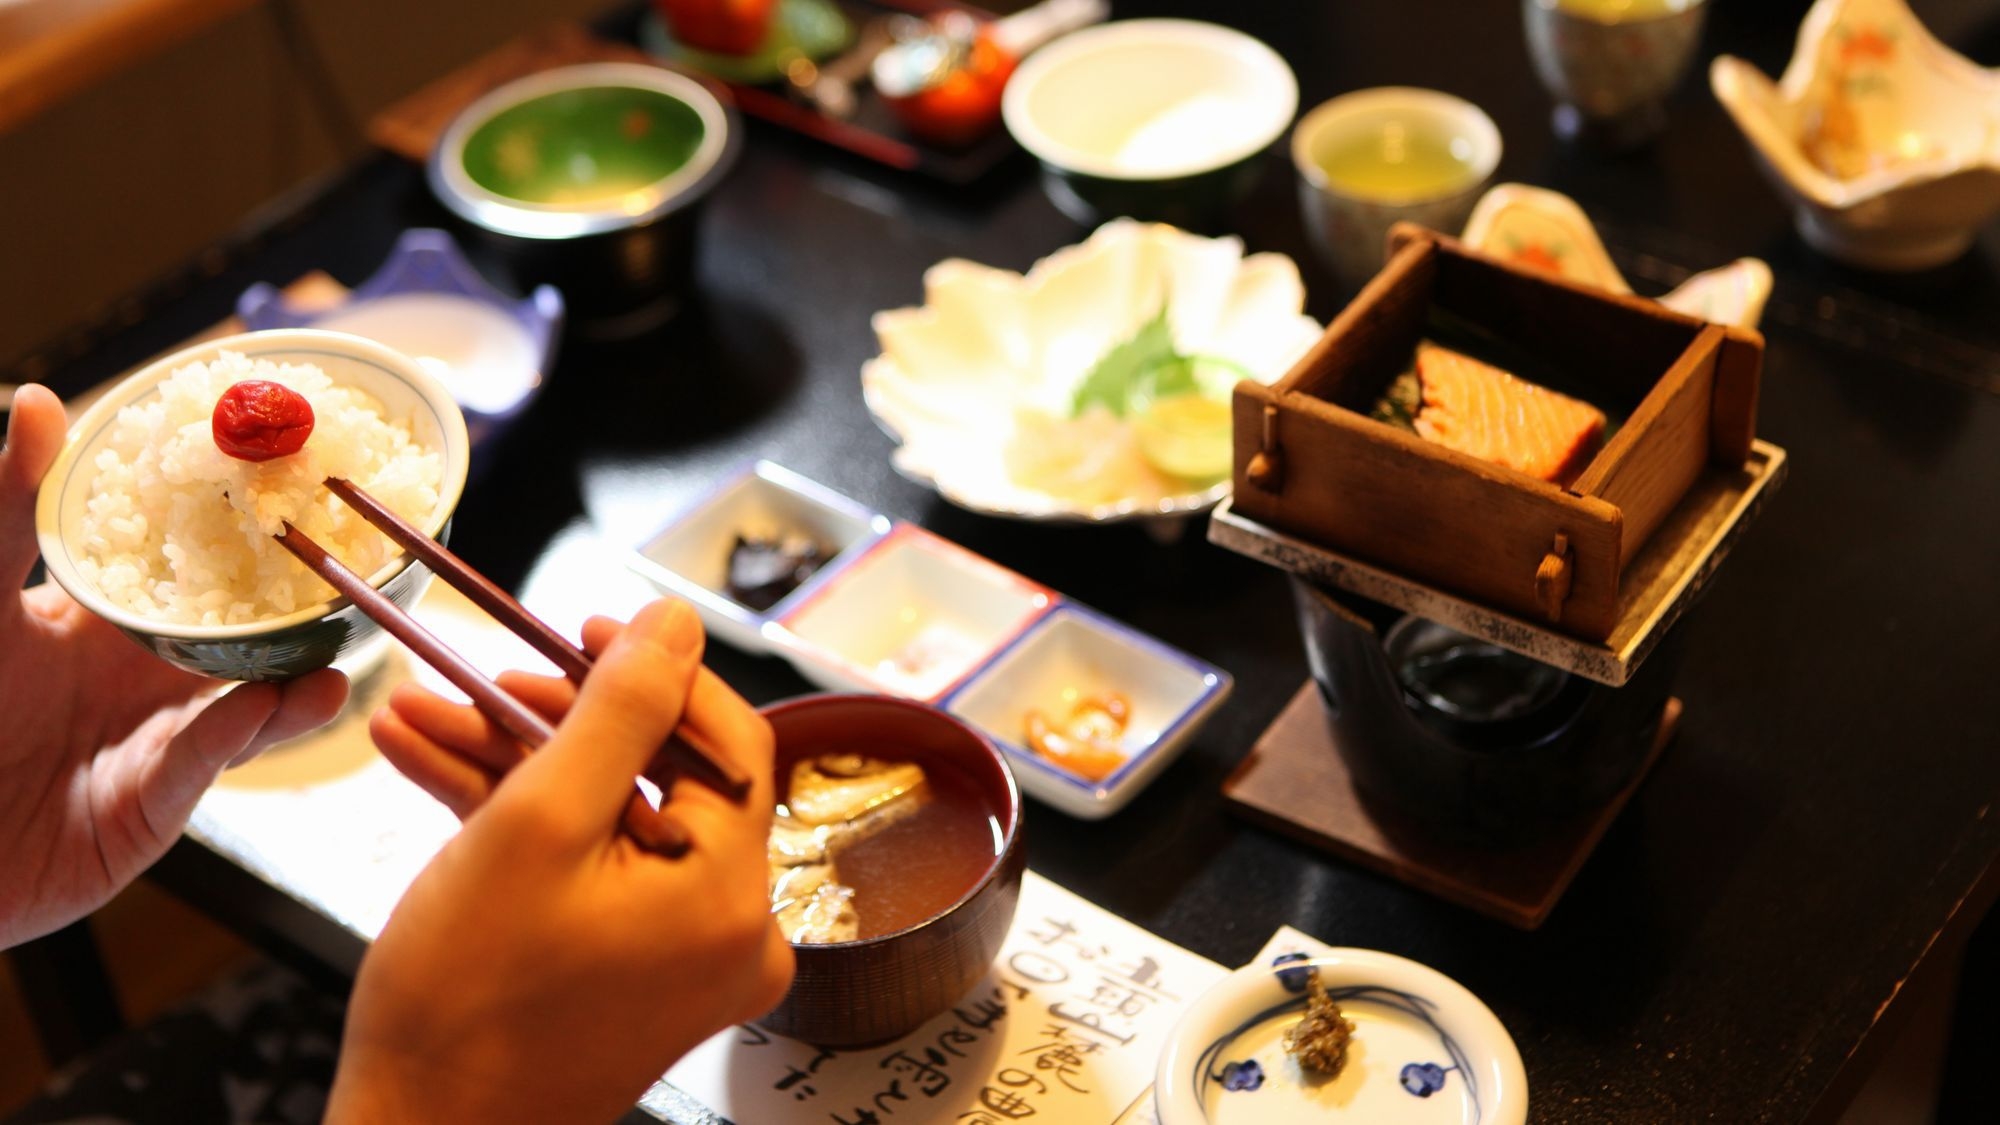 【呑兵衛必見】30種類以上ある日本酒が色々楽しめるお酒満喫会席プラン